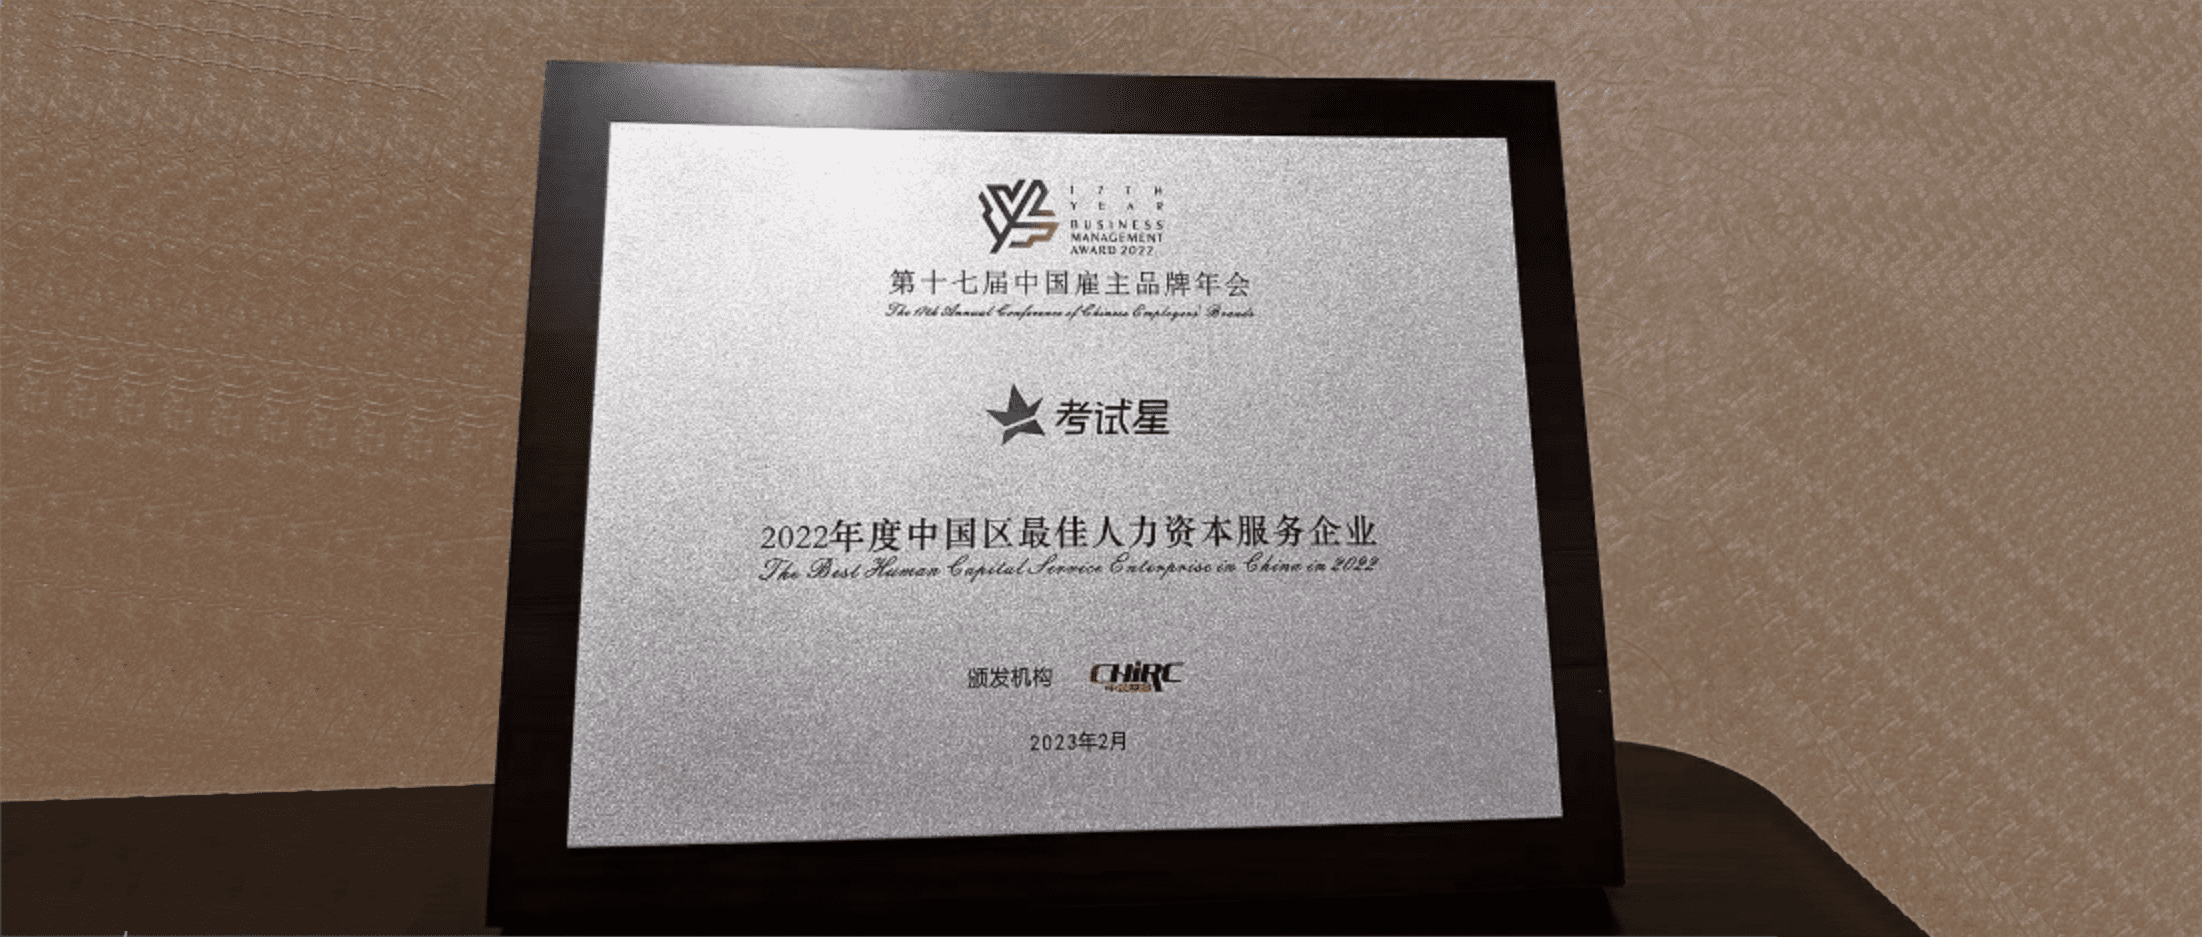 『考试星』荣获“2022年度中国区最佳人力资本服务企业”奖项